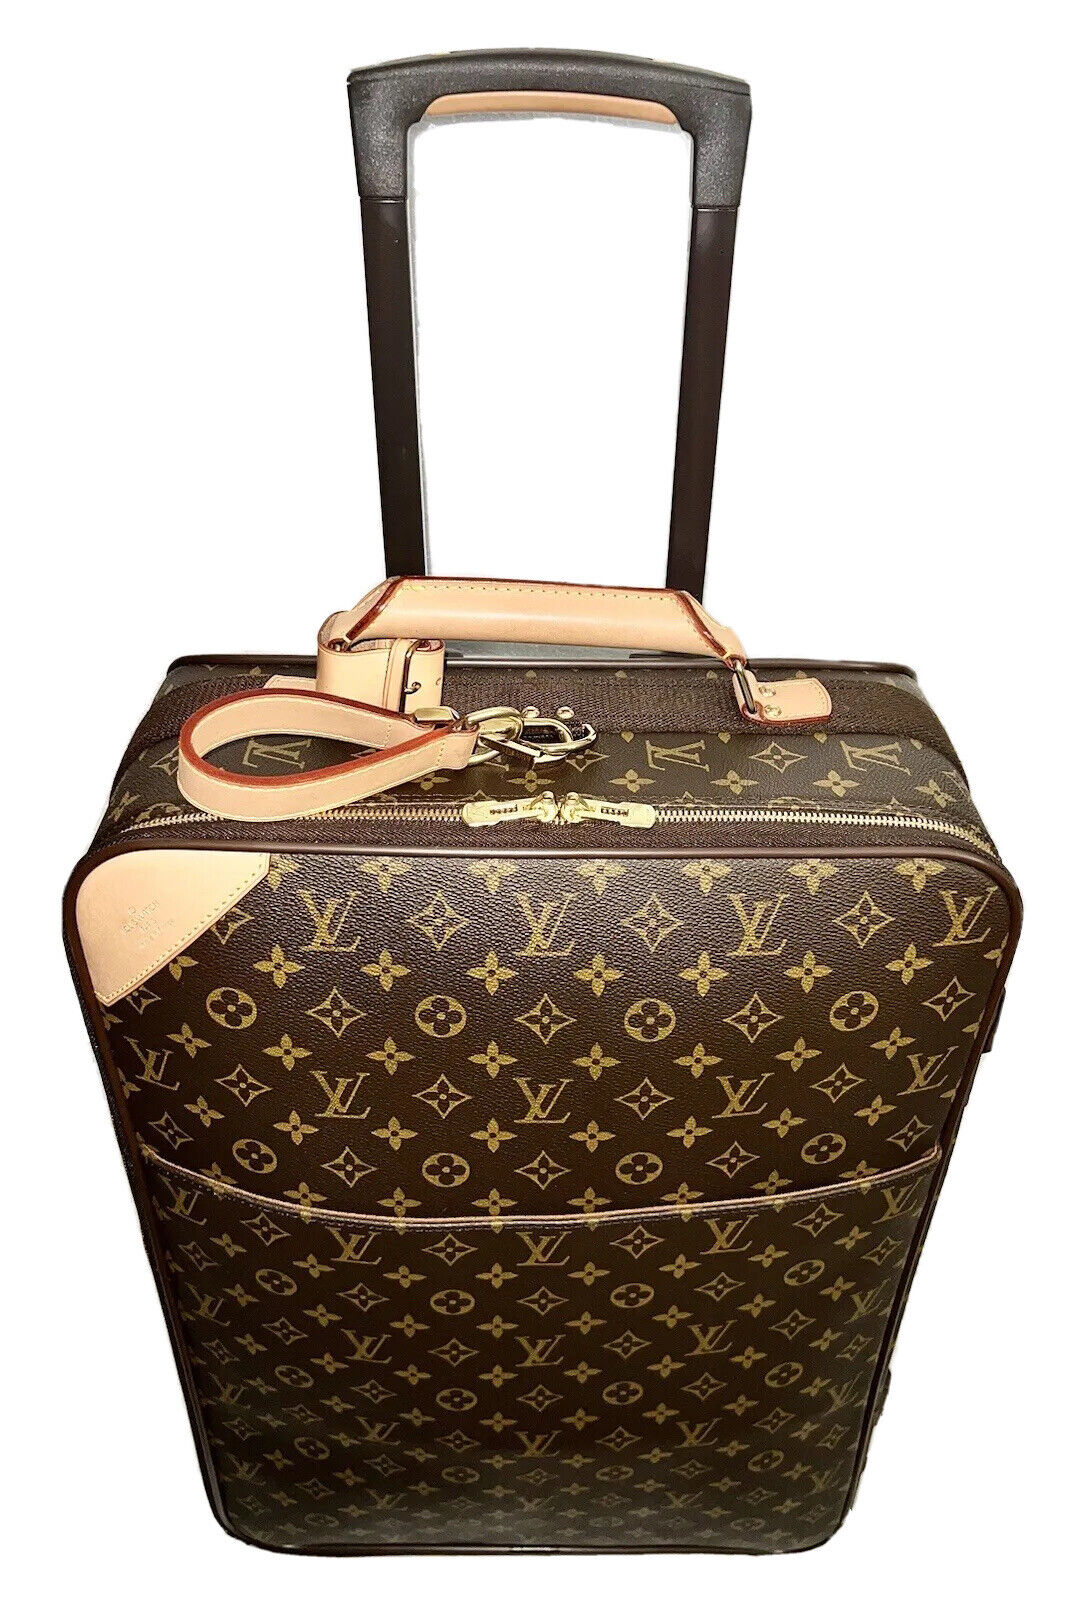 Louis Vuitton Pegase Rolling Carry-on Suitcase Bag w/ Dustbag+Garment